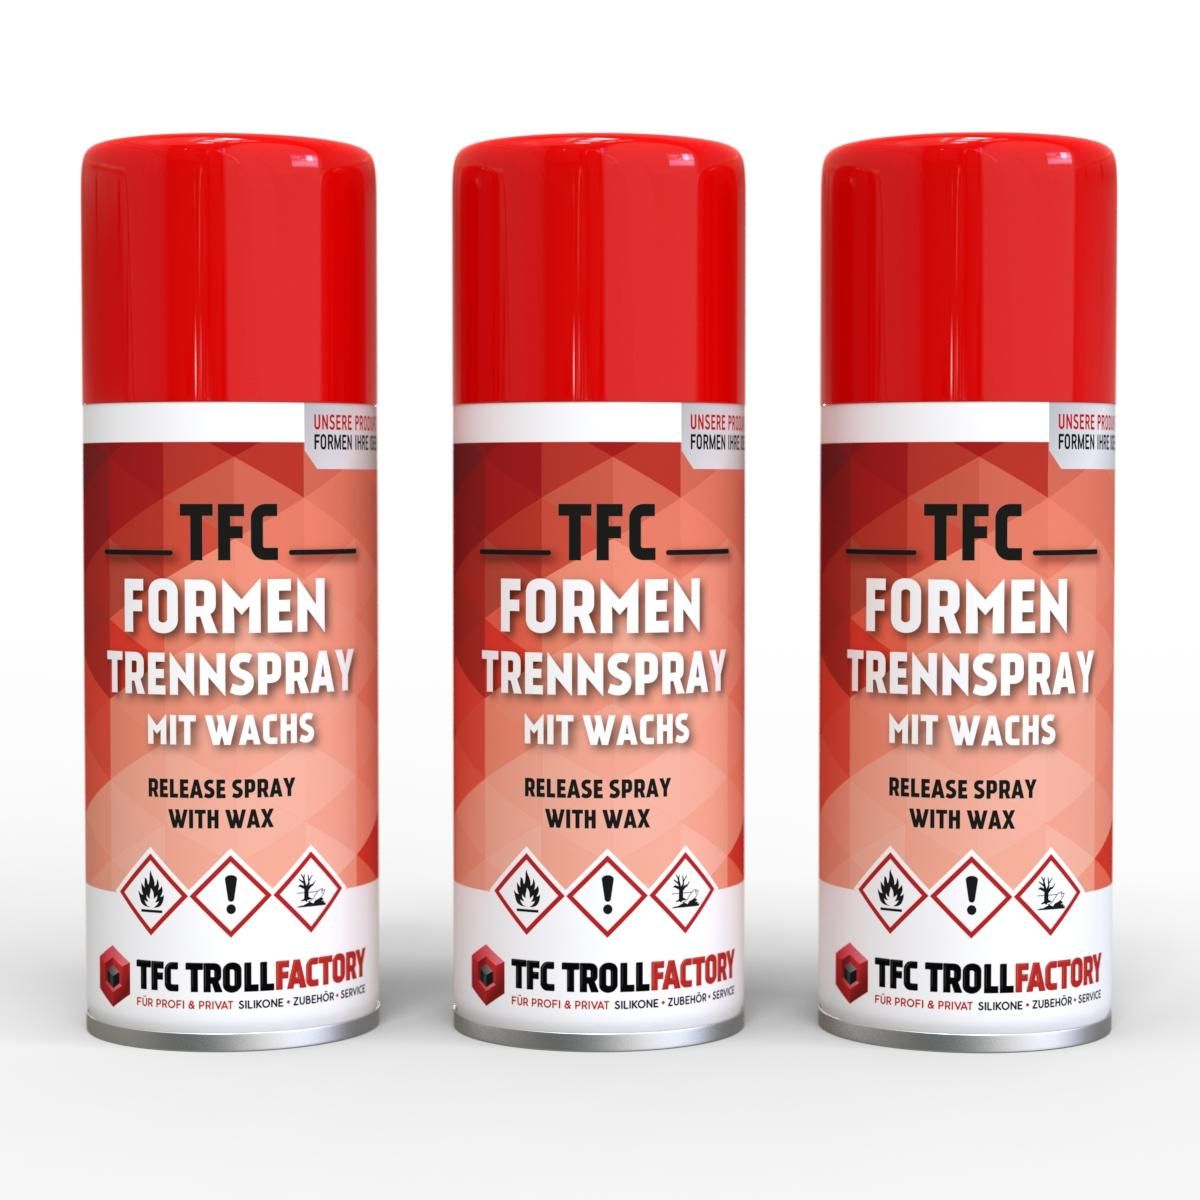 TFC Formen Trennspray mit Wachs für Resin Giessharz silikonfrei